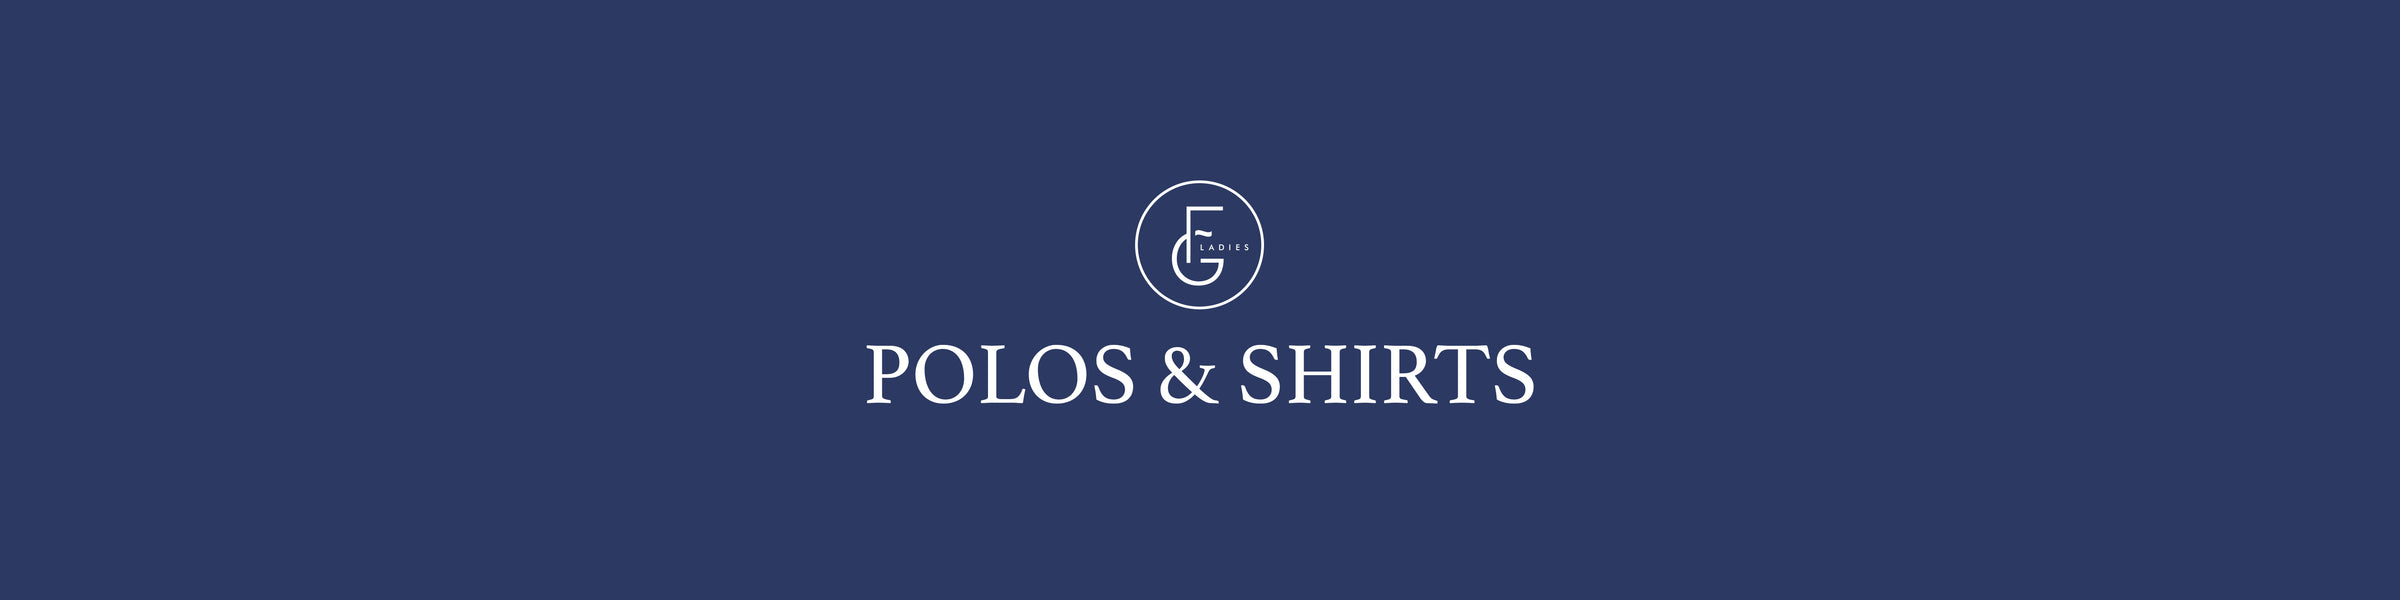 Ladies Polos & Shirts